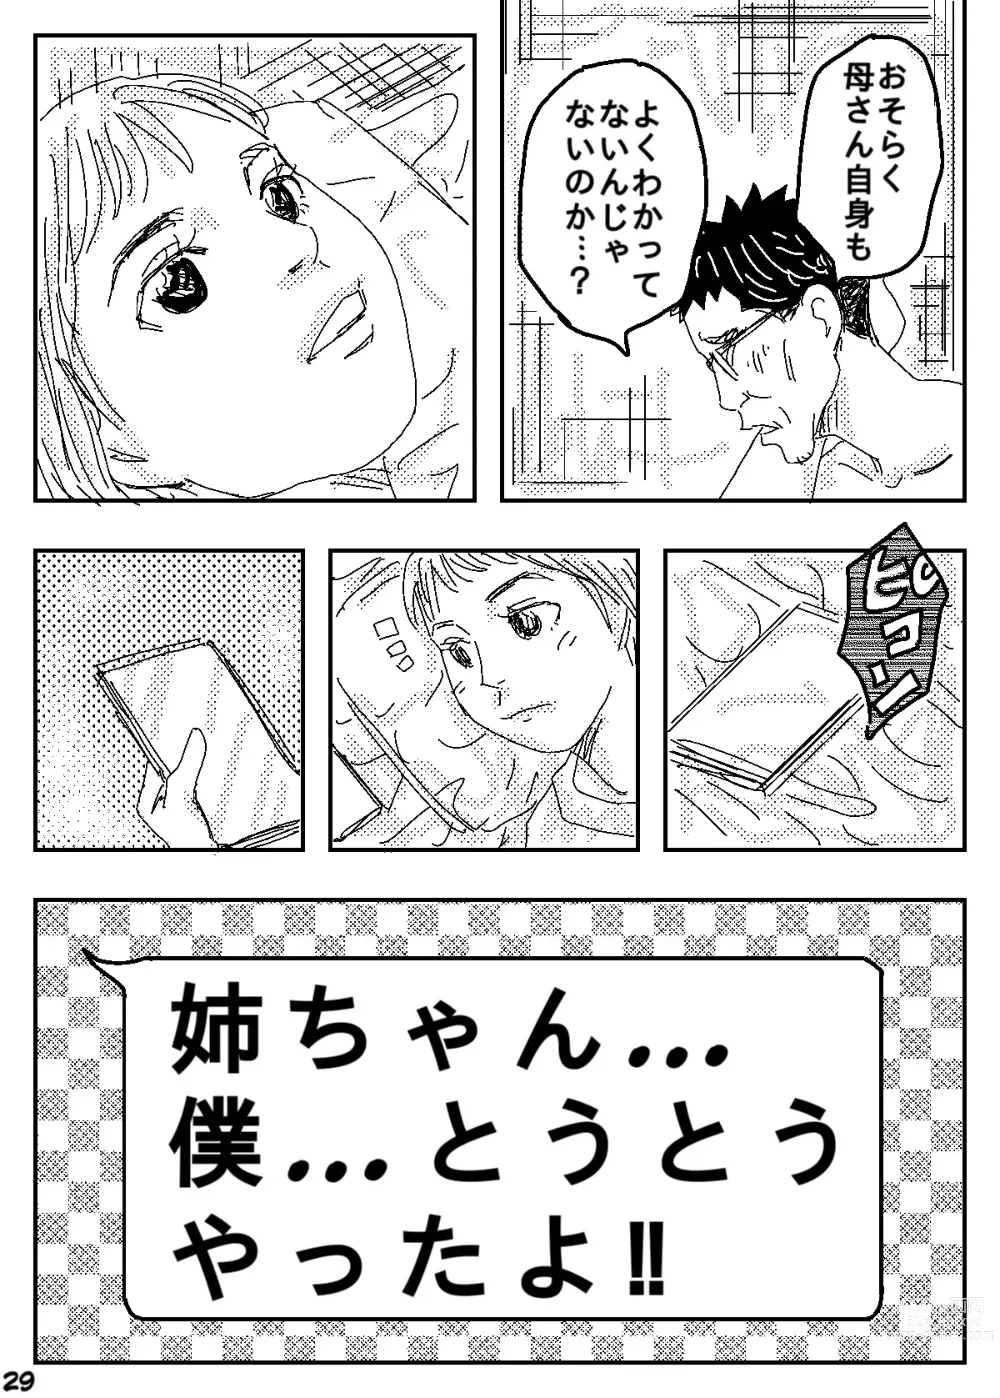 Page 29 of doujinshi Gesu no Kiwami Kazoku